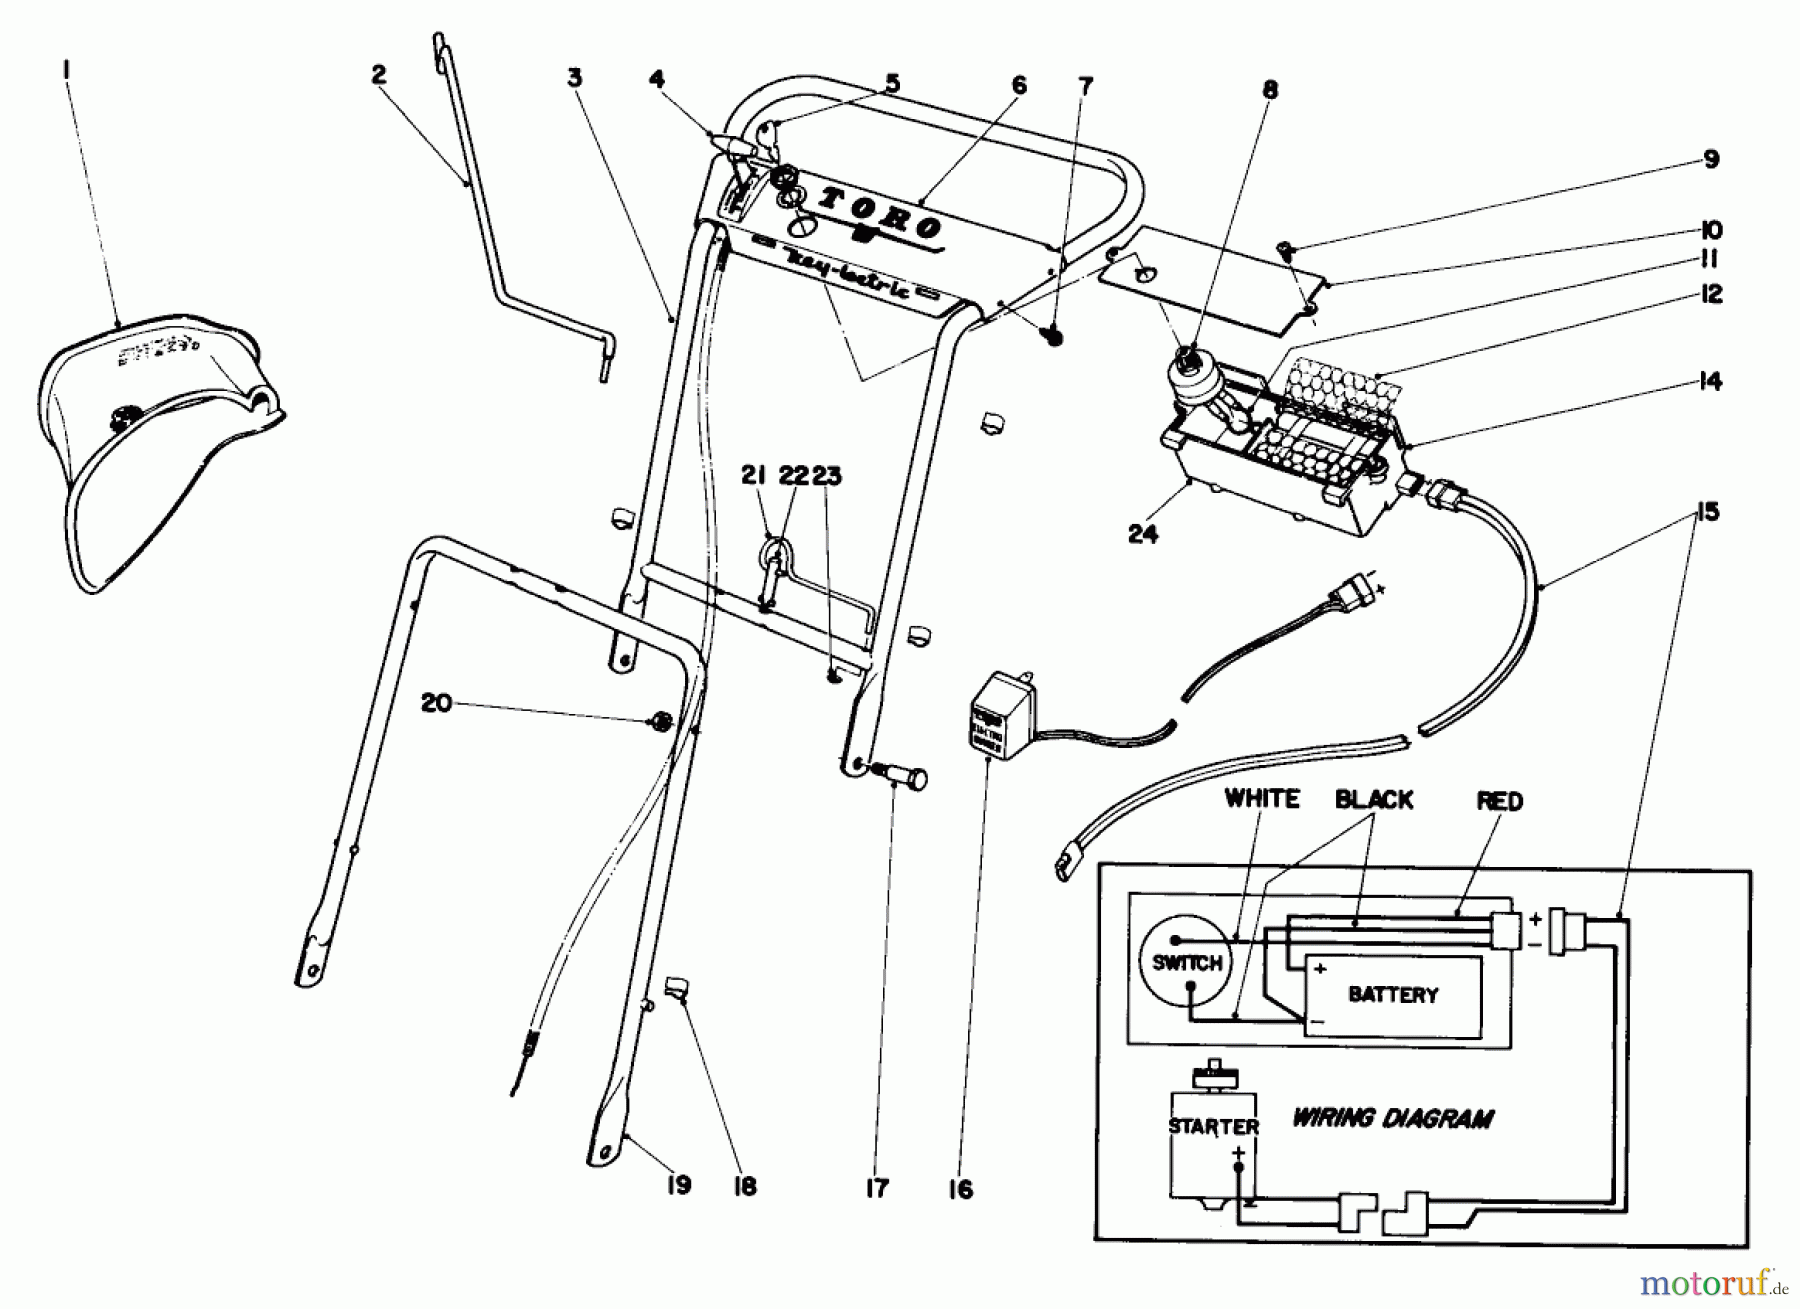  Toro Neu Mowers, Walk-Behind Seite 1 19251 - Toro Whirlwind Lawnmower, 1969 (9000001-9999999) HANDLE ASSEMBLY